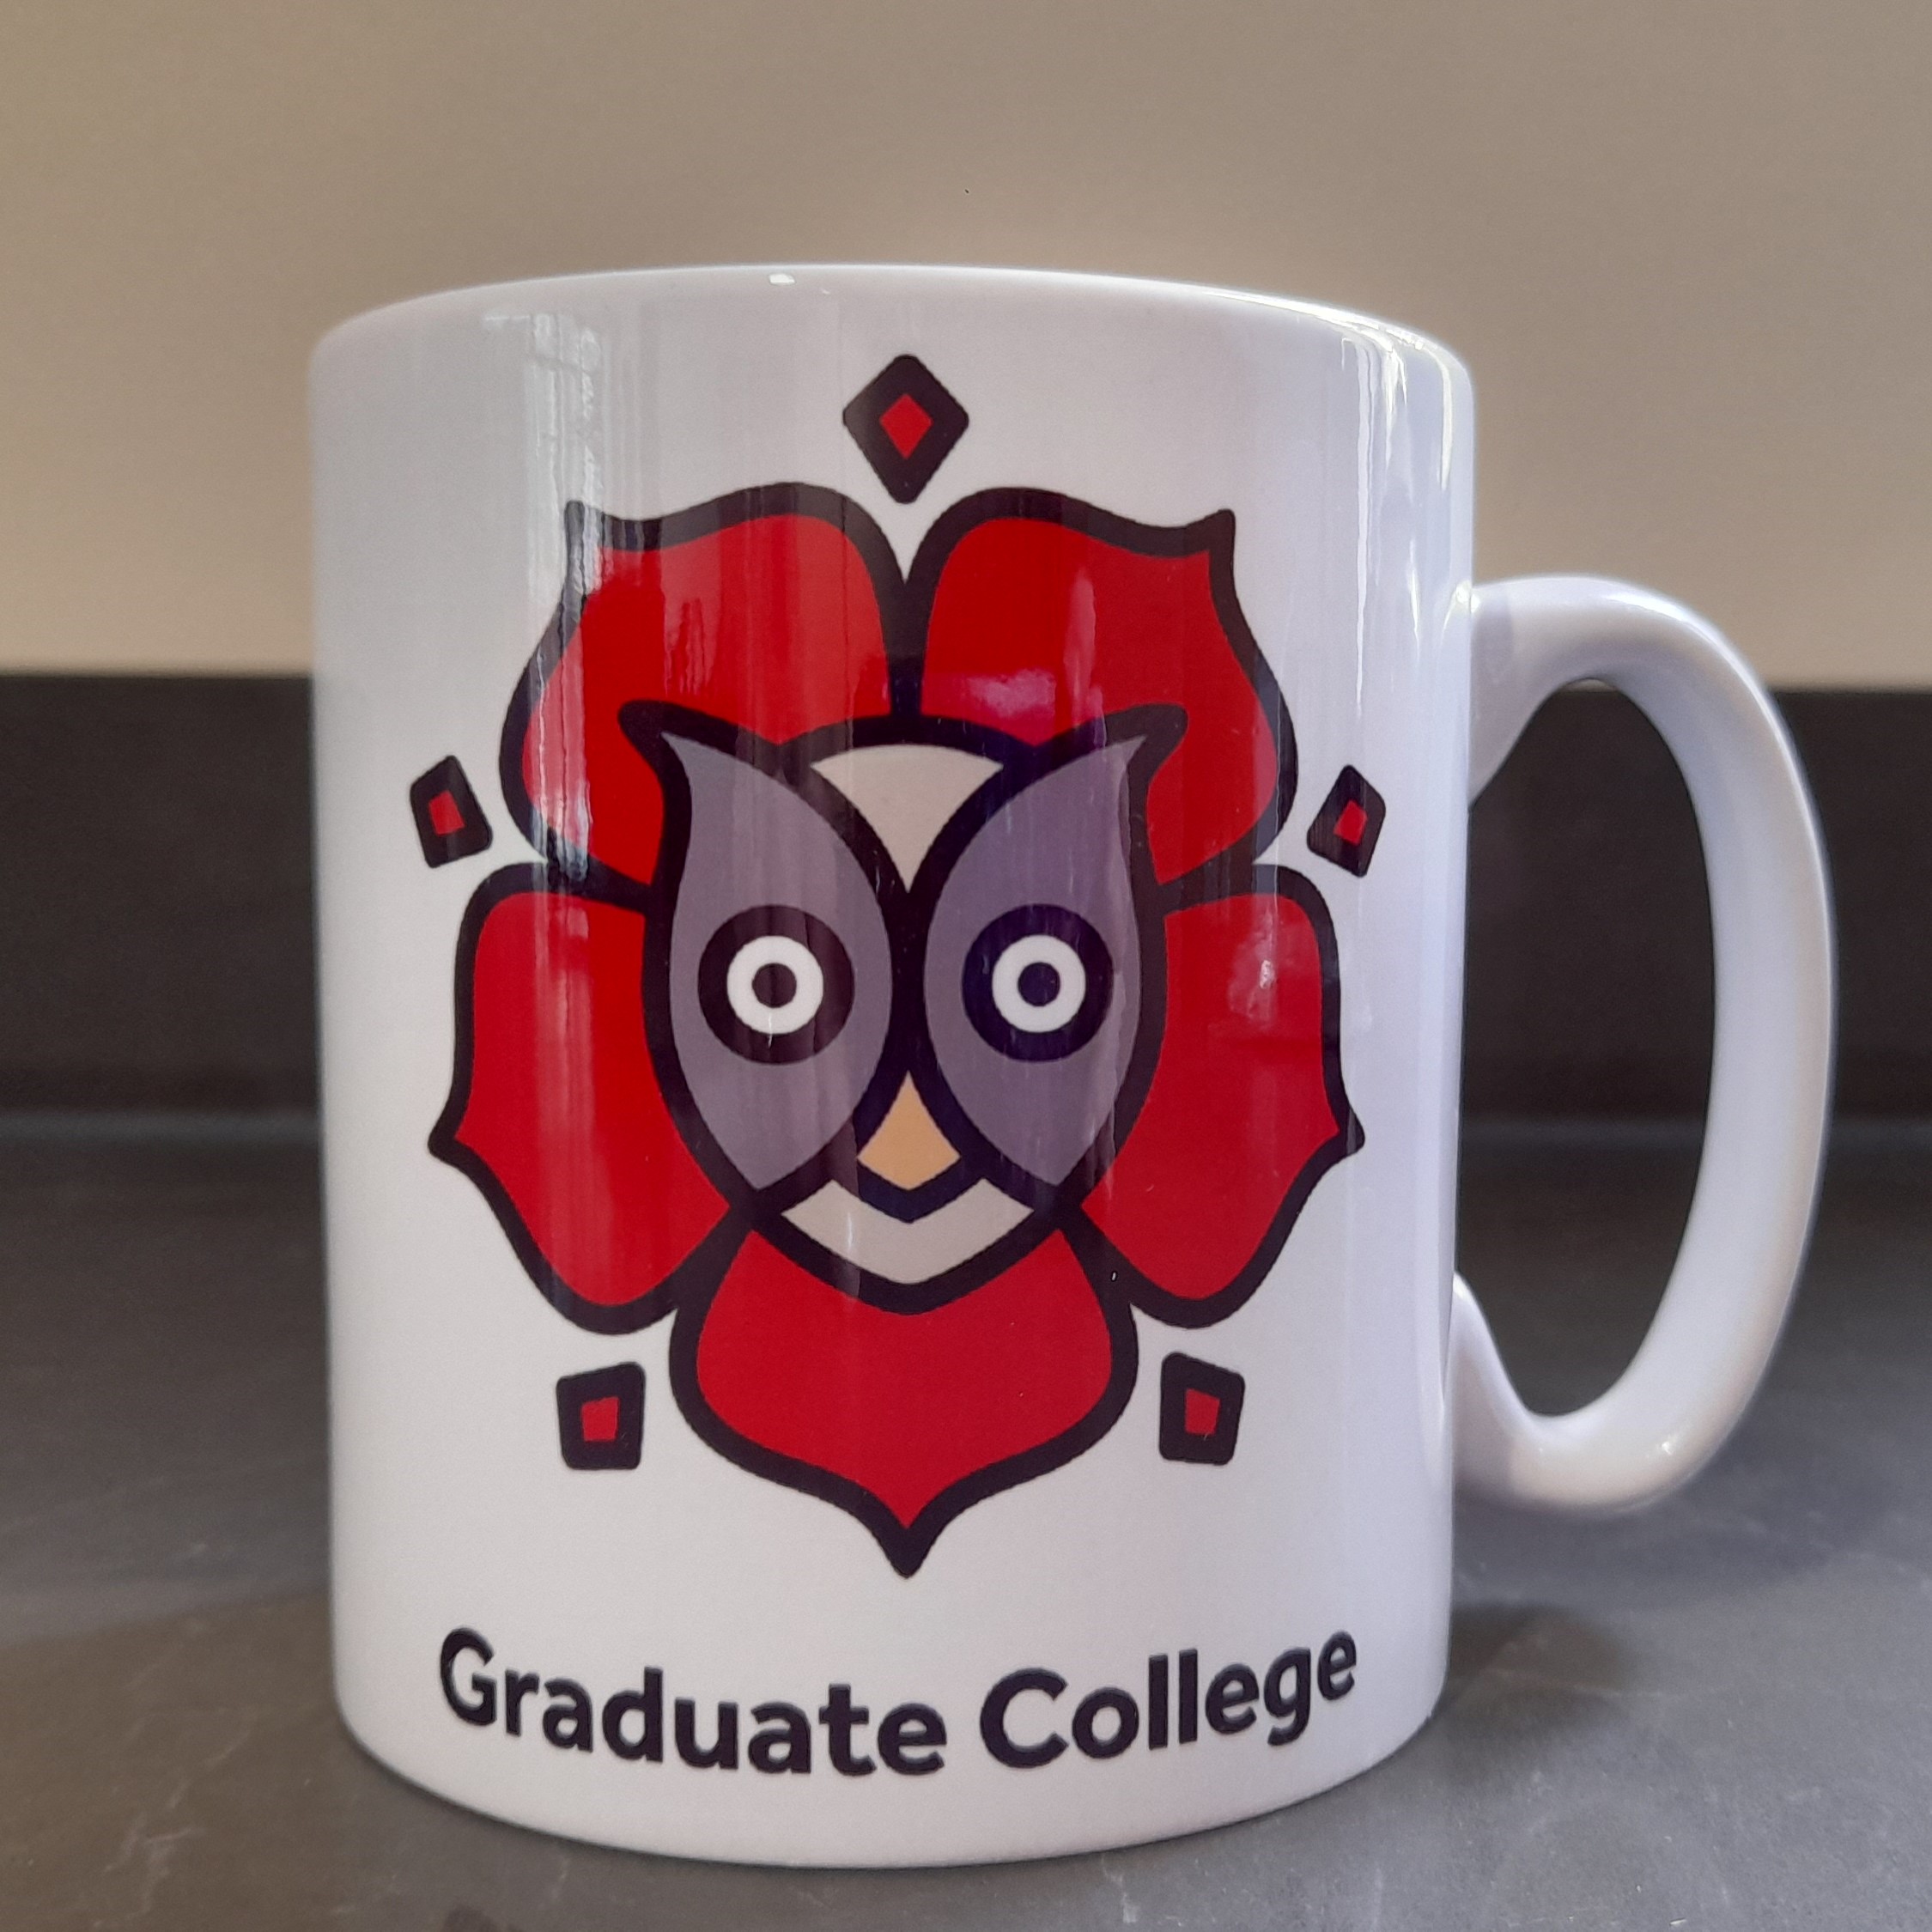 Grad College Mug